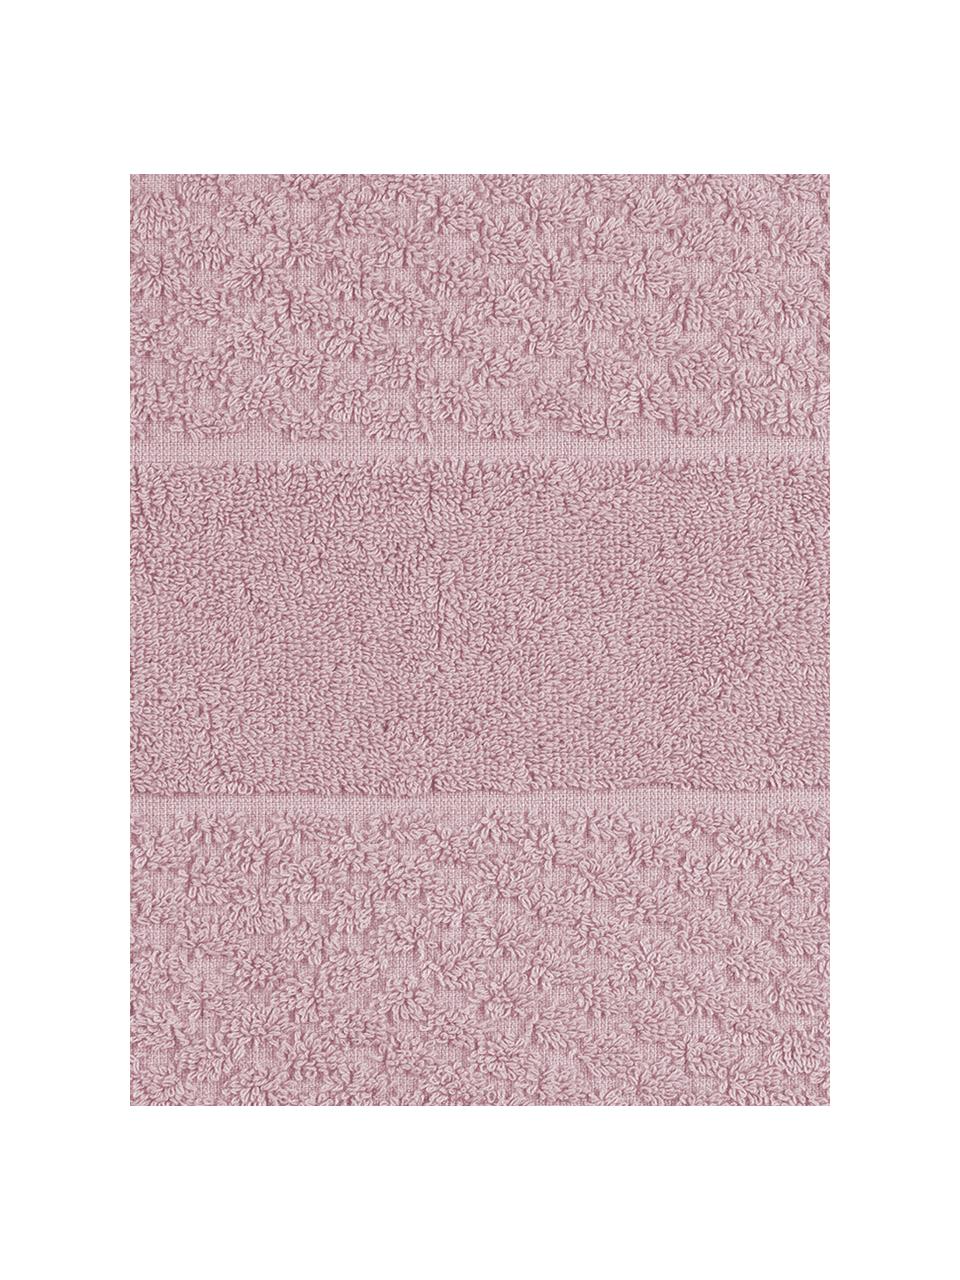 Asciugamano rosa cipria con motivo a nido d'ape Katharina, Rosa cipria, Asciugamano, Larg. 50 x Lung. 100 cm, 2 pz